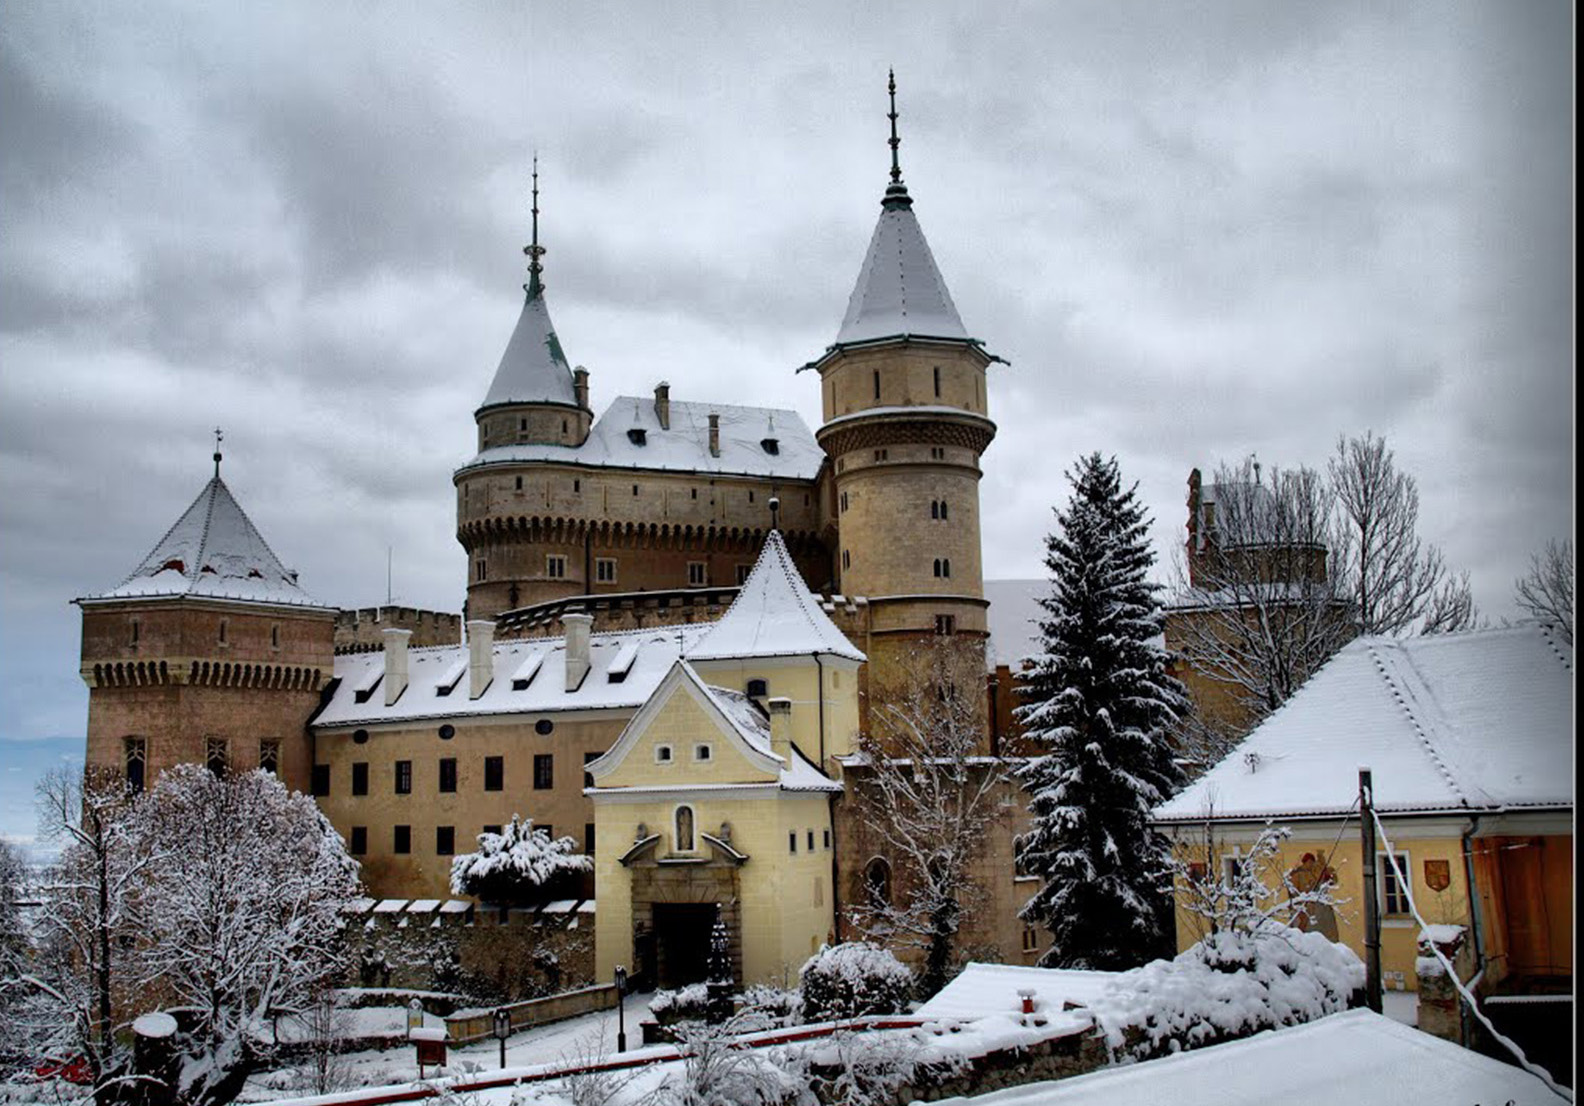 Бойницкий замок в Словакии